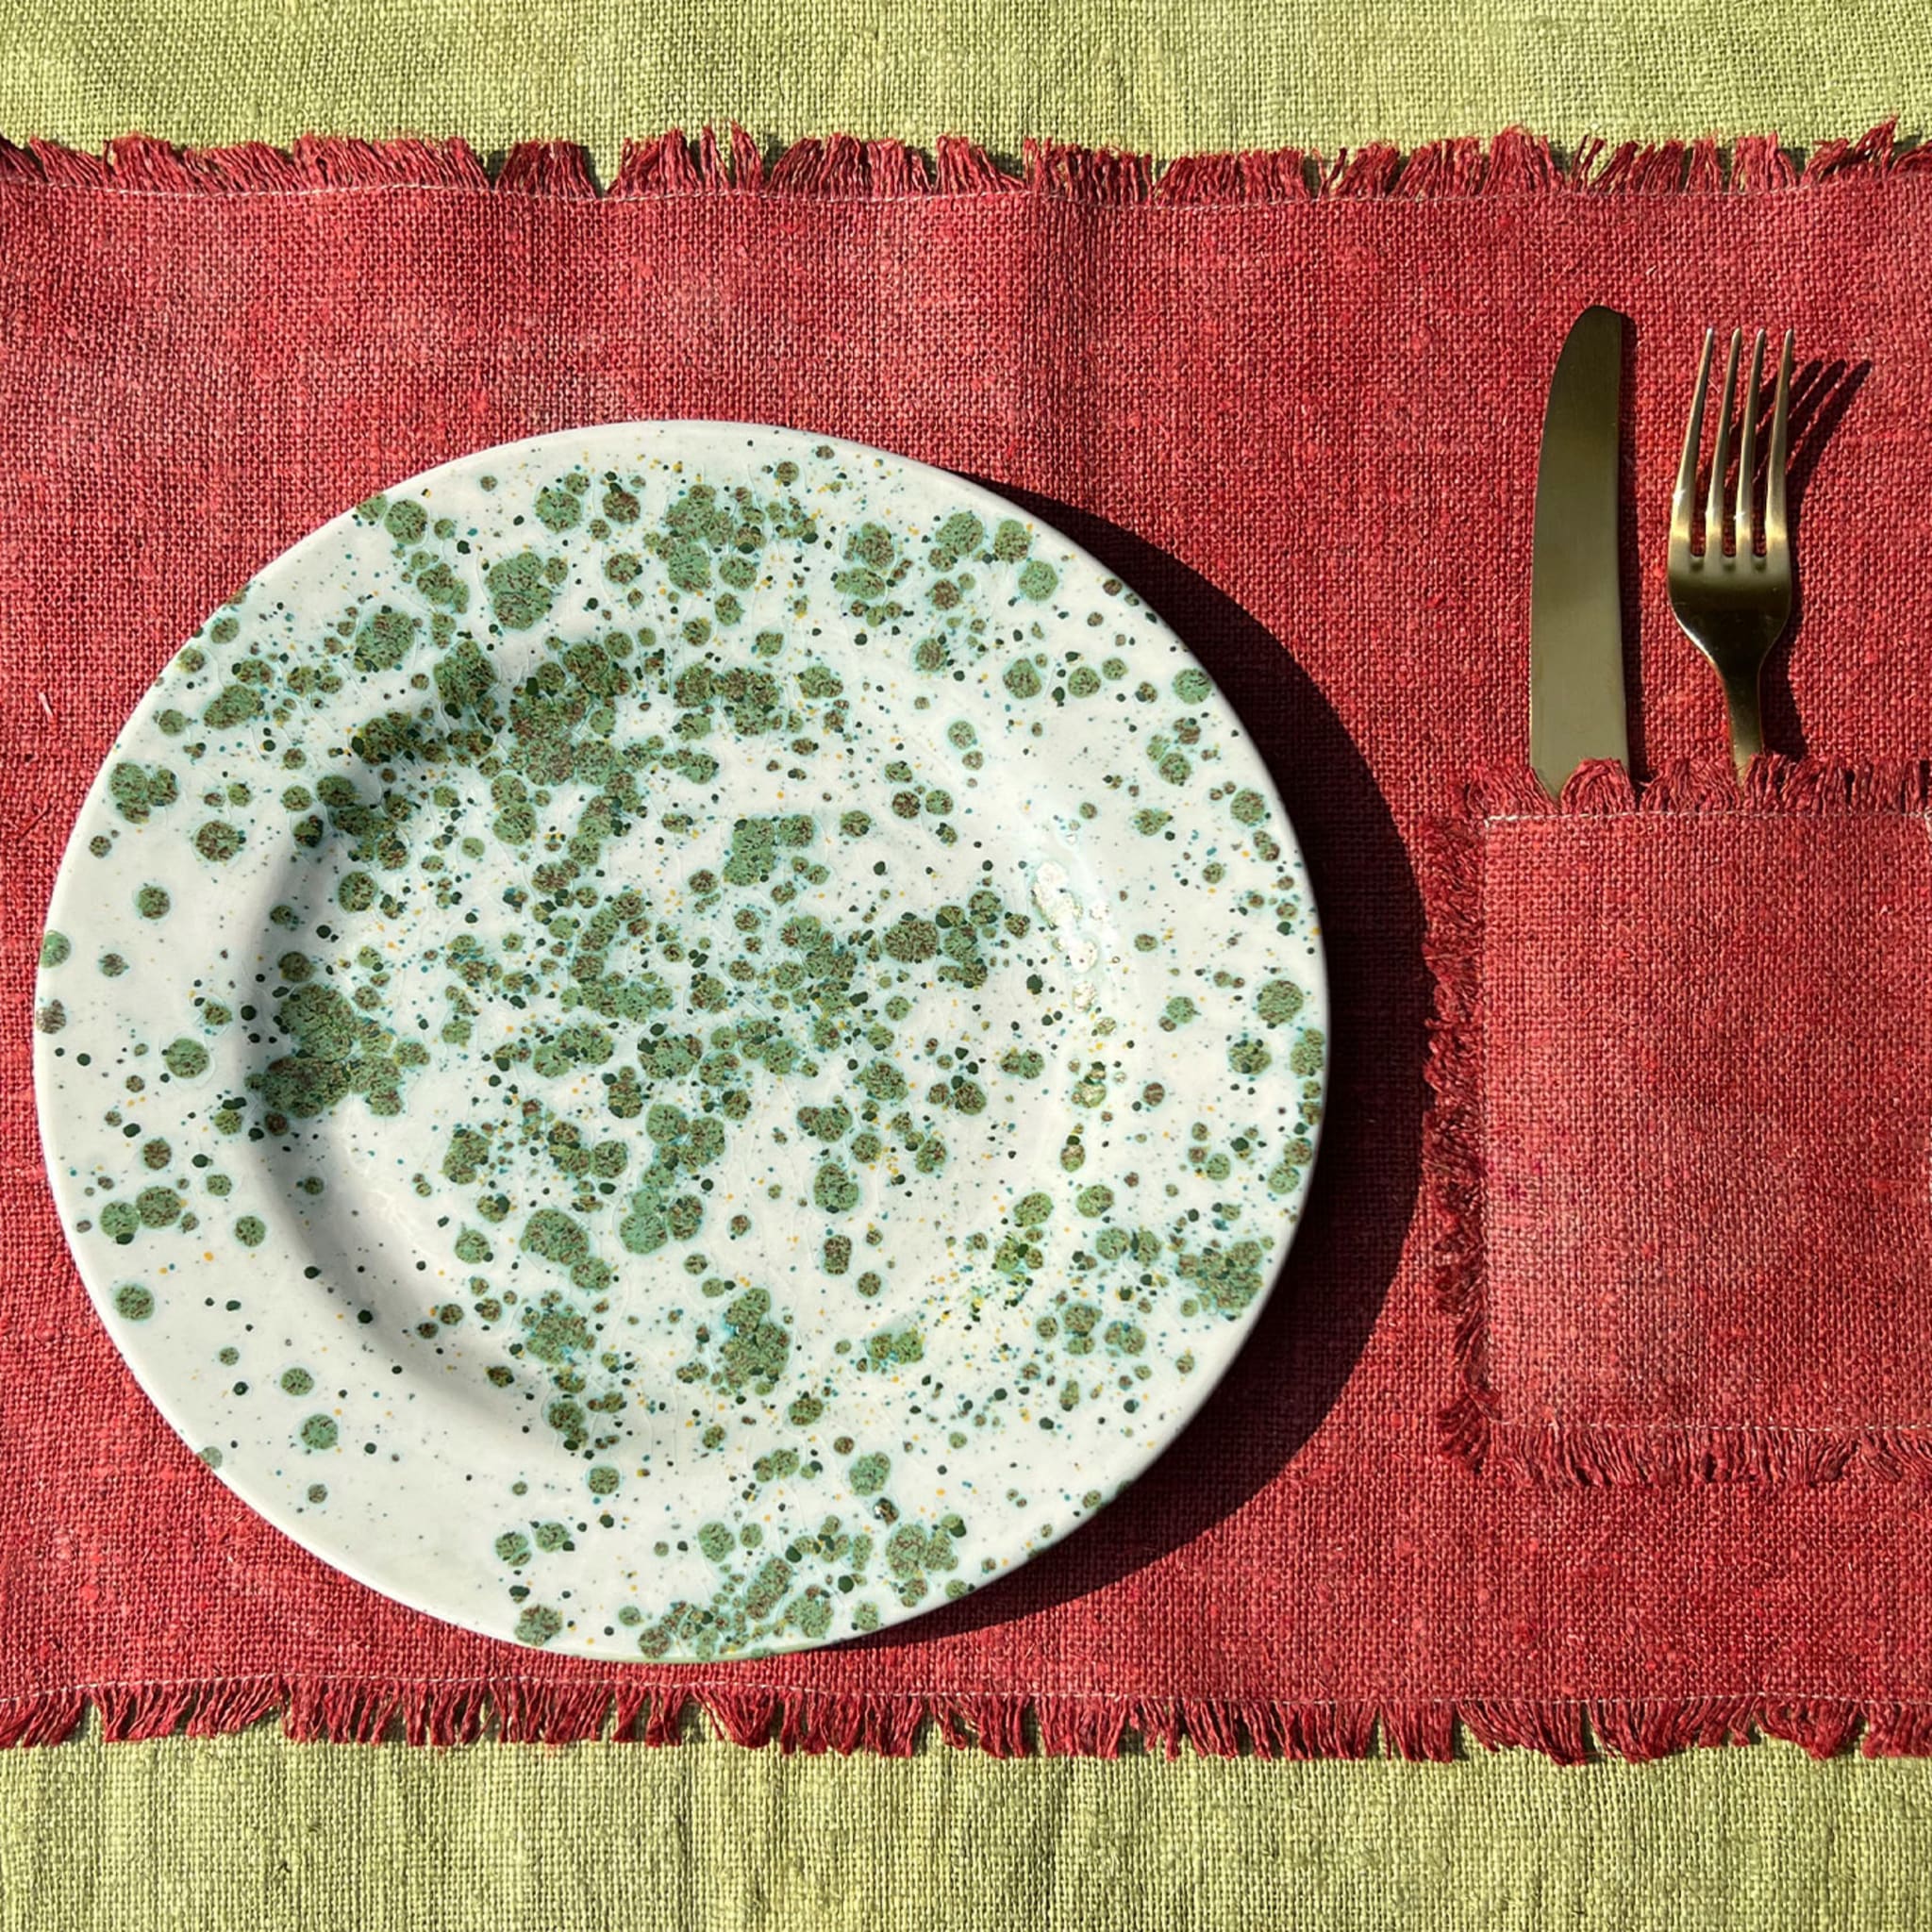 Herb Mottled Green Dinner Plate - Alternative view 2